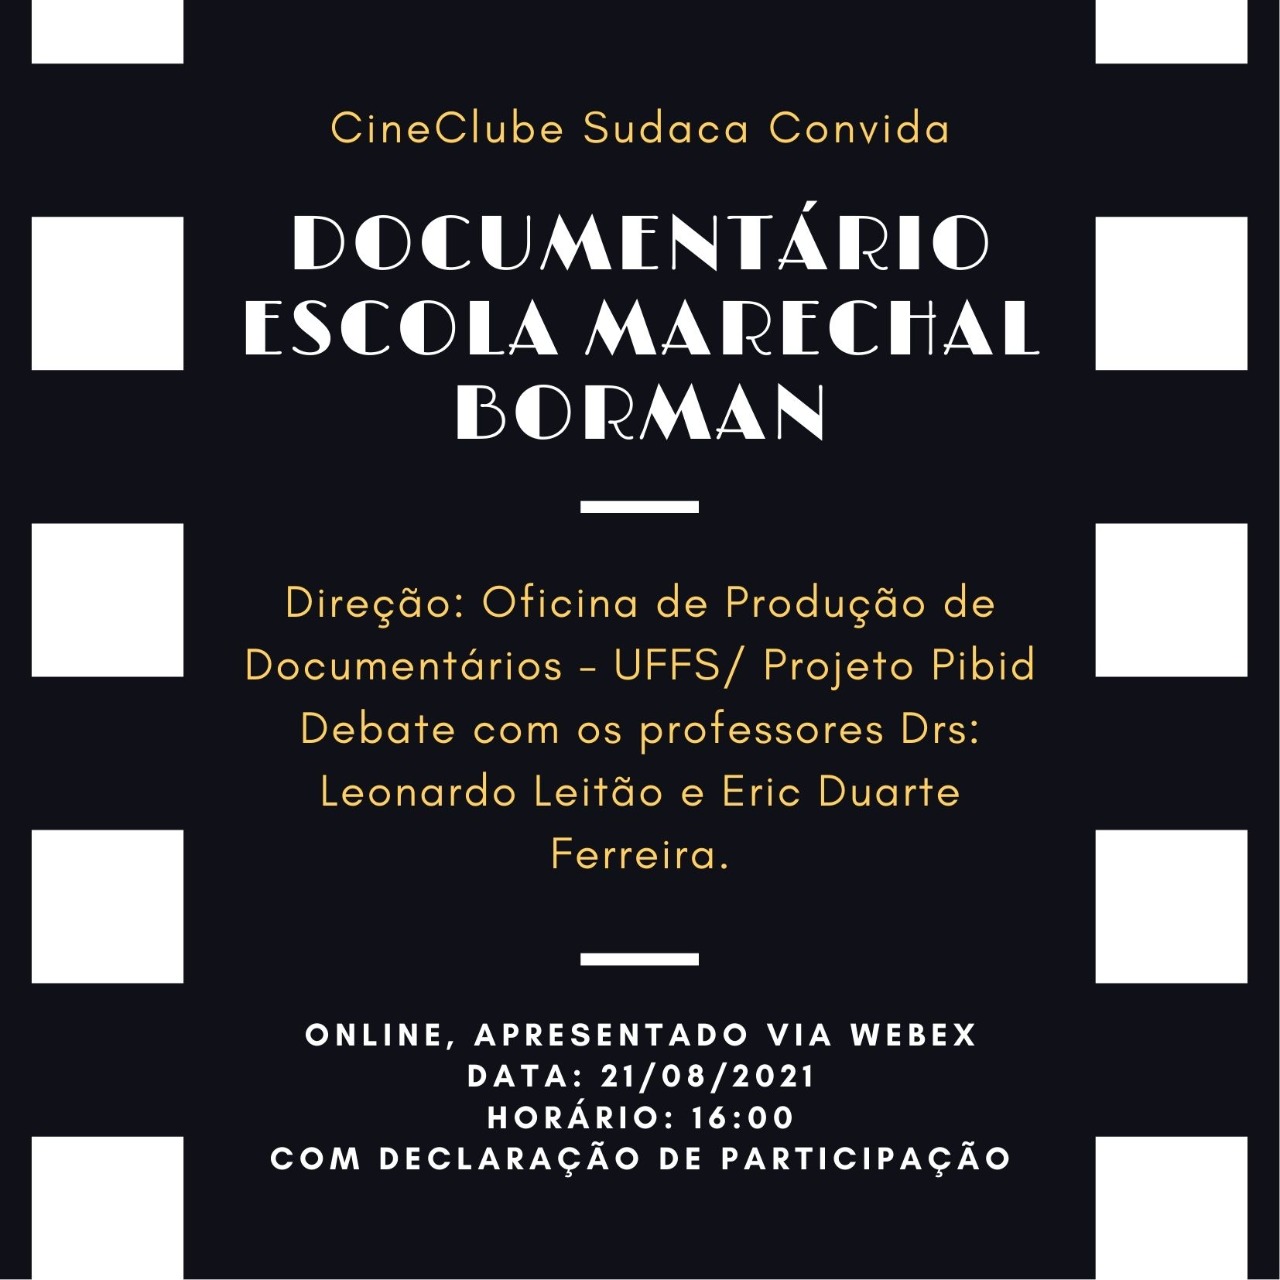 Cineclube Sudaca convida